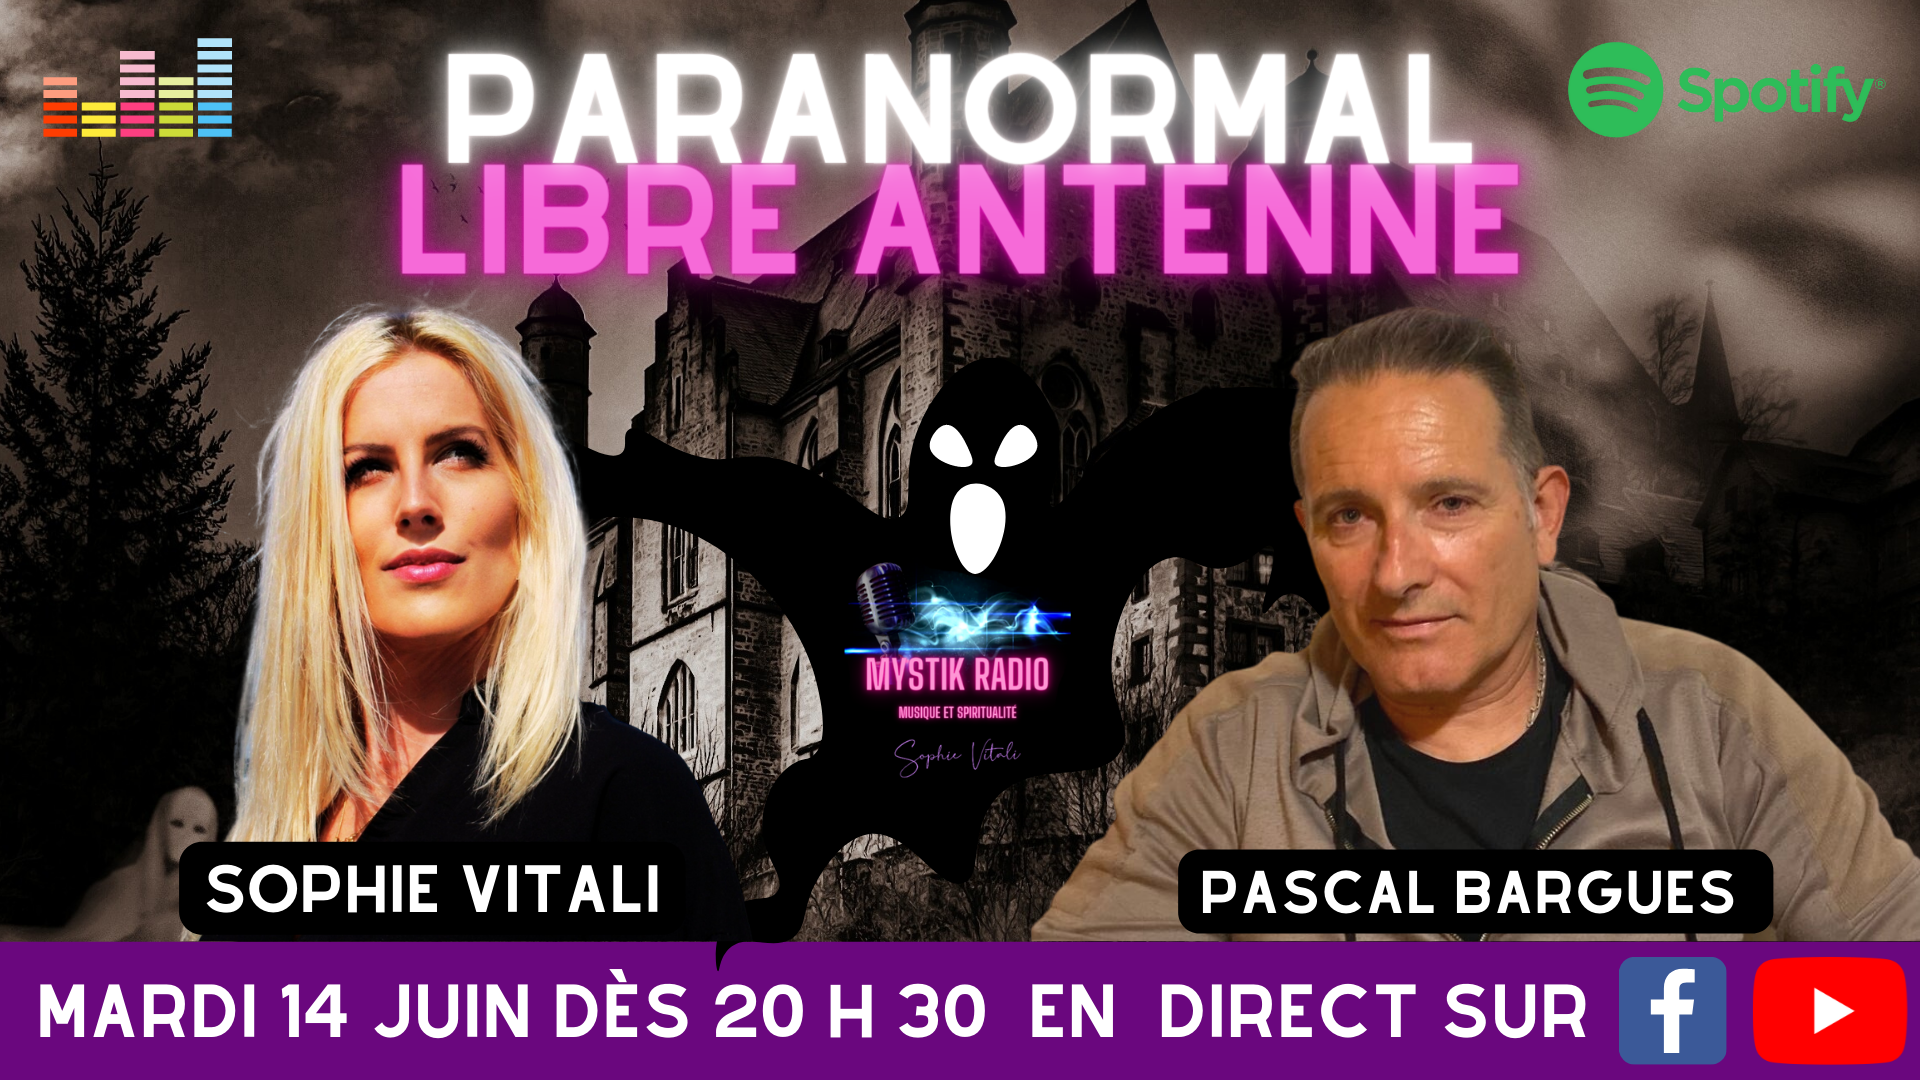 Libre antenne Paranormal présentée par Sophie Vitali & Pascal Bargues 04.06.2022